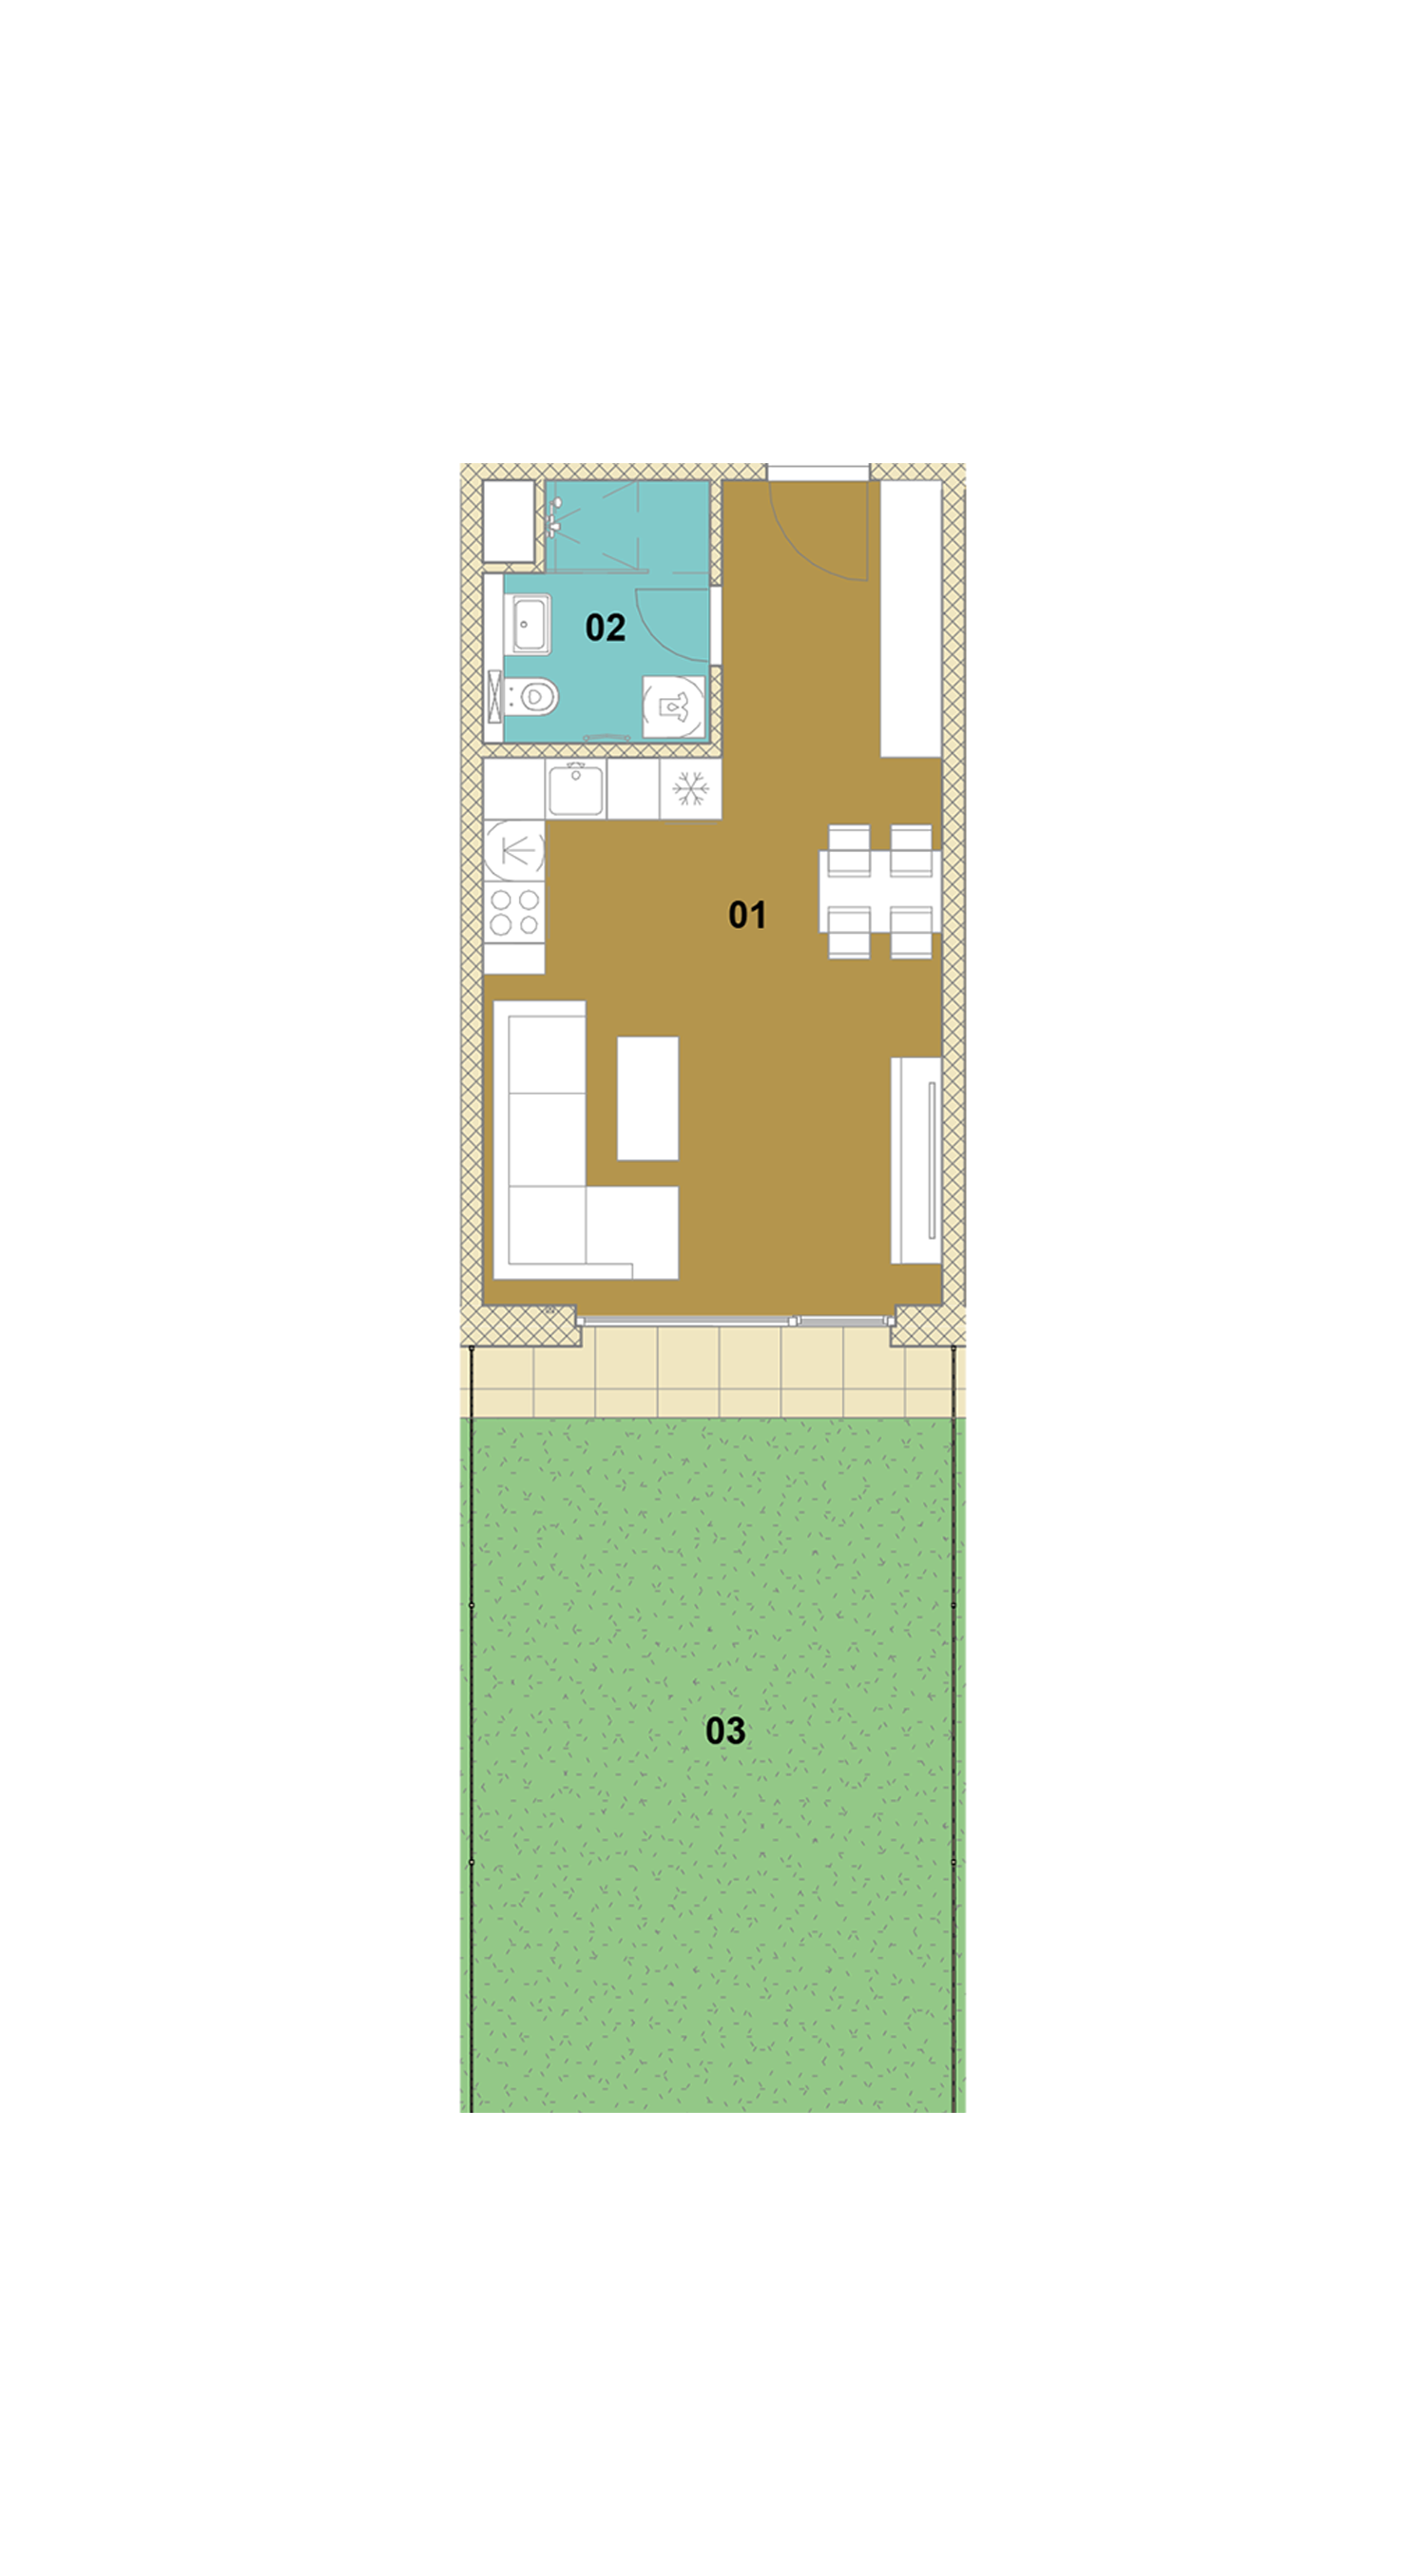 Jednoizbový byt so záhradou E1-103